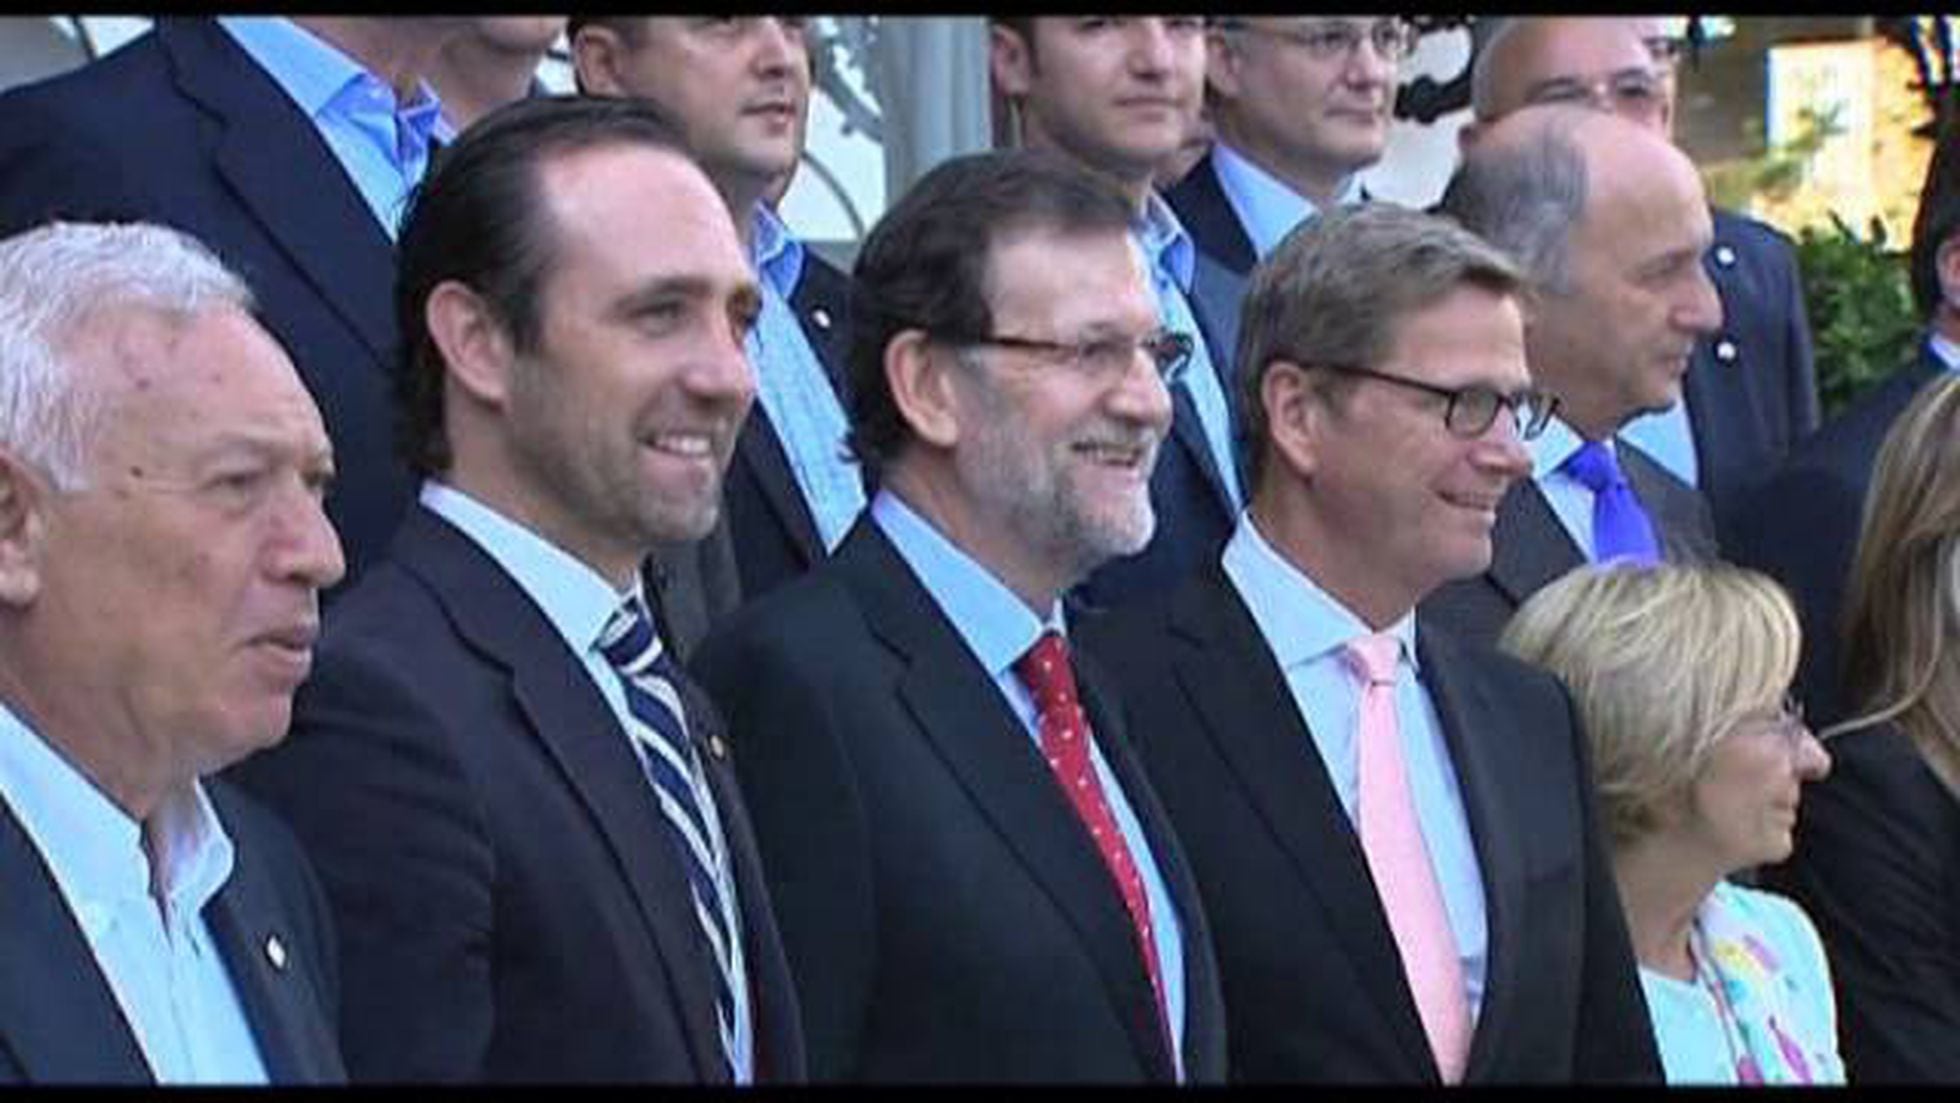 Rajoy recuerda que los gobernantes deben salir de las urnas | Politica PAÍS